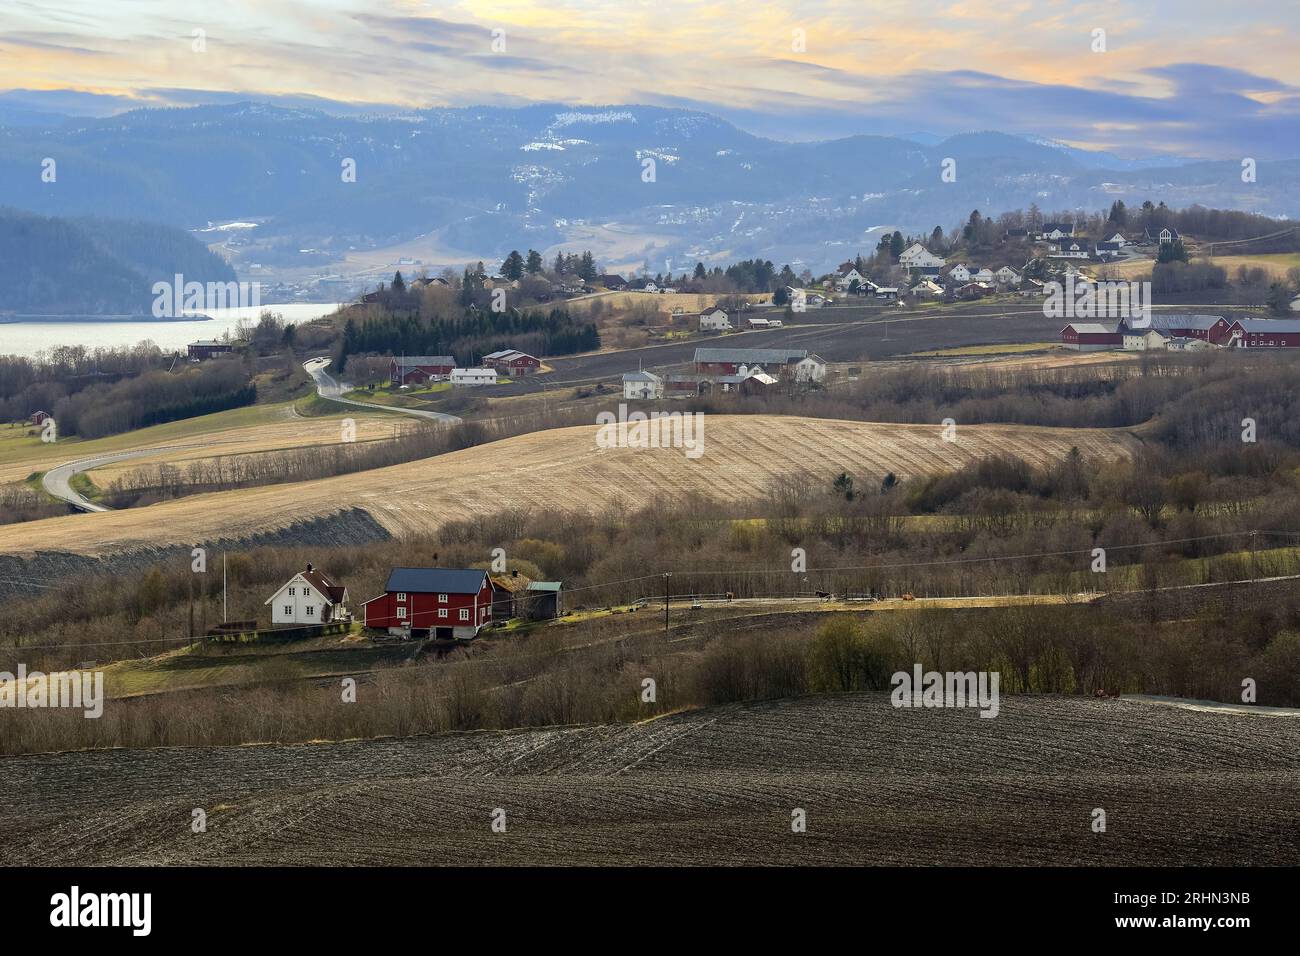 Vista aerea dell'area agricola Byneset situata vicino alla città norvegese di Trondheim Foto Stock